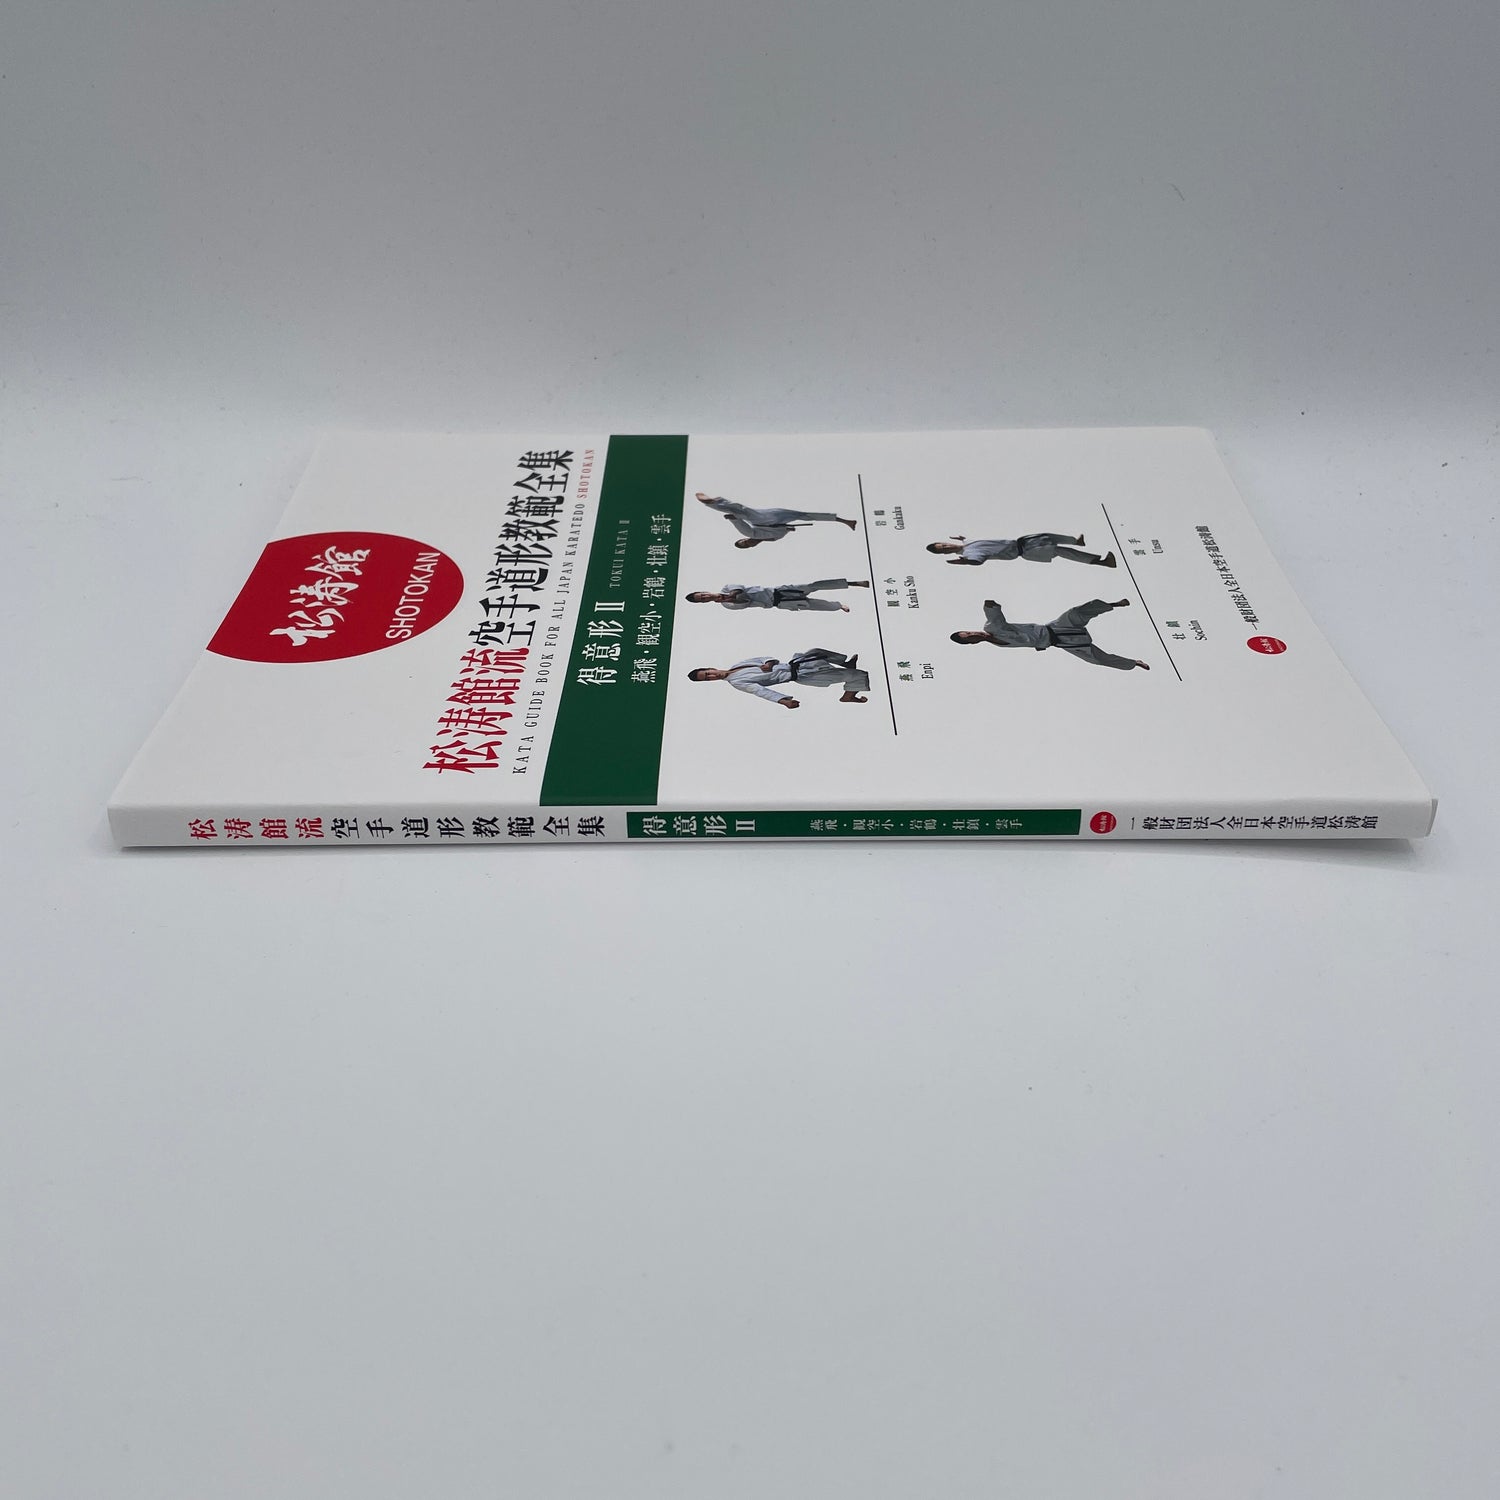 全日本空手道松濤館徳井型2の型ガイドブック